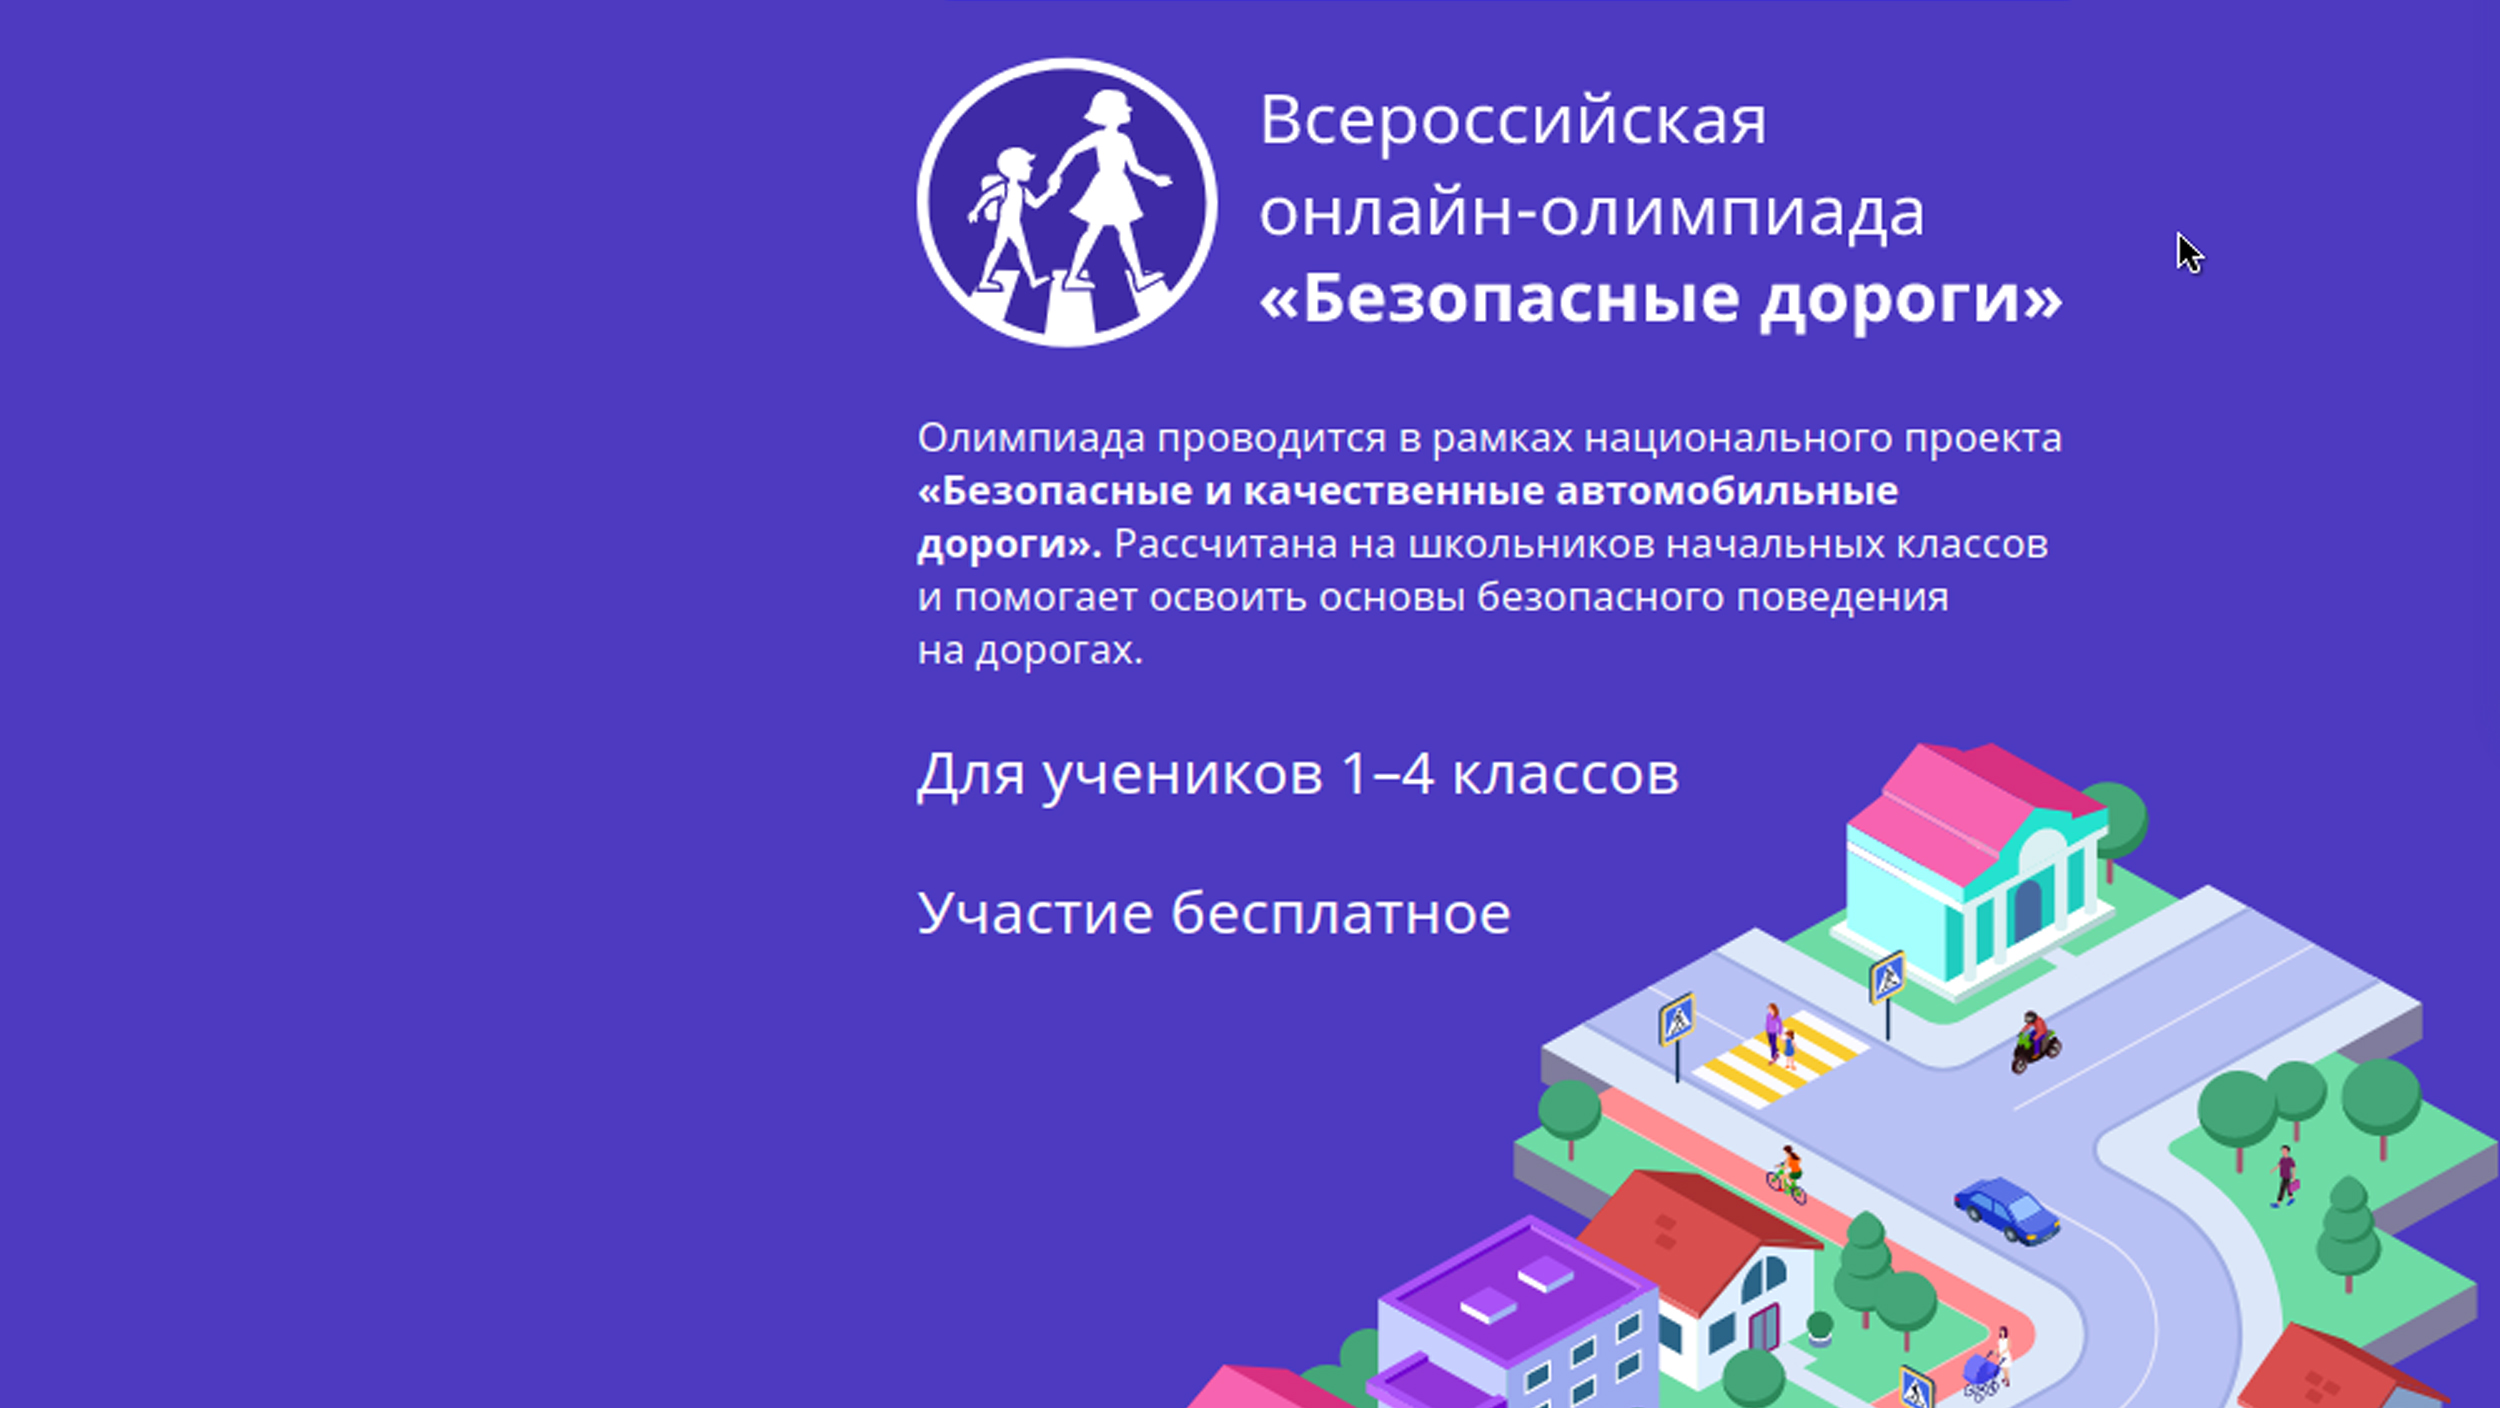 Всероссийская онлайн-олимпиада по ПДД «Безопасные дороги» продлена на неделю